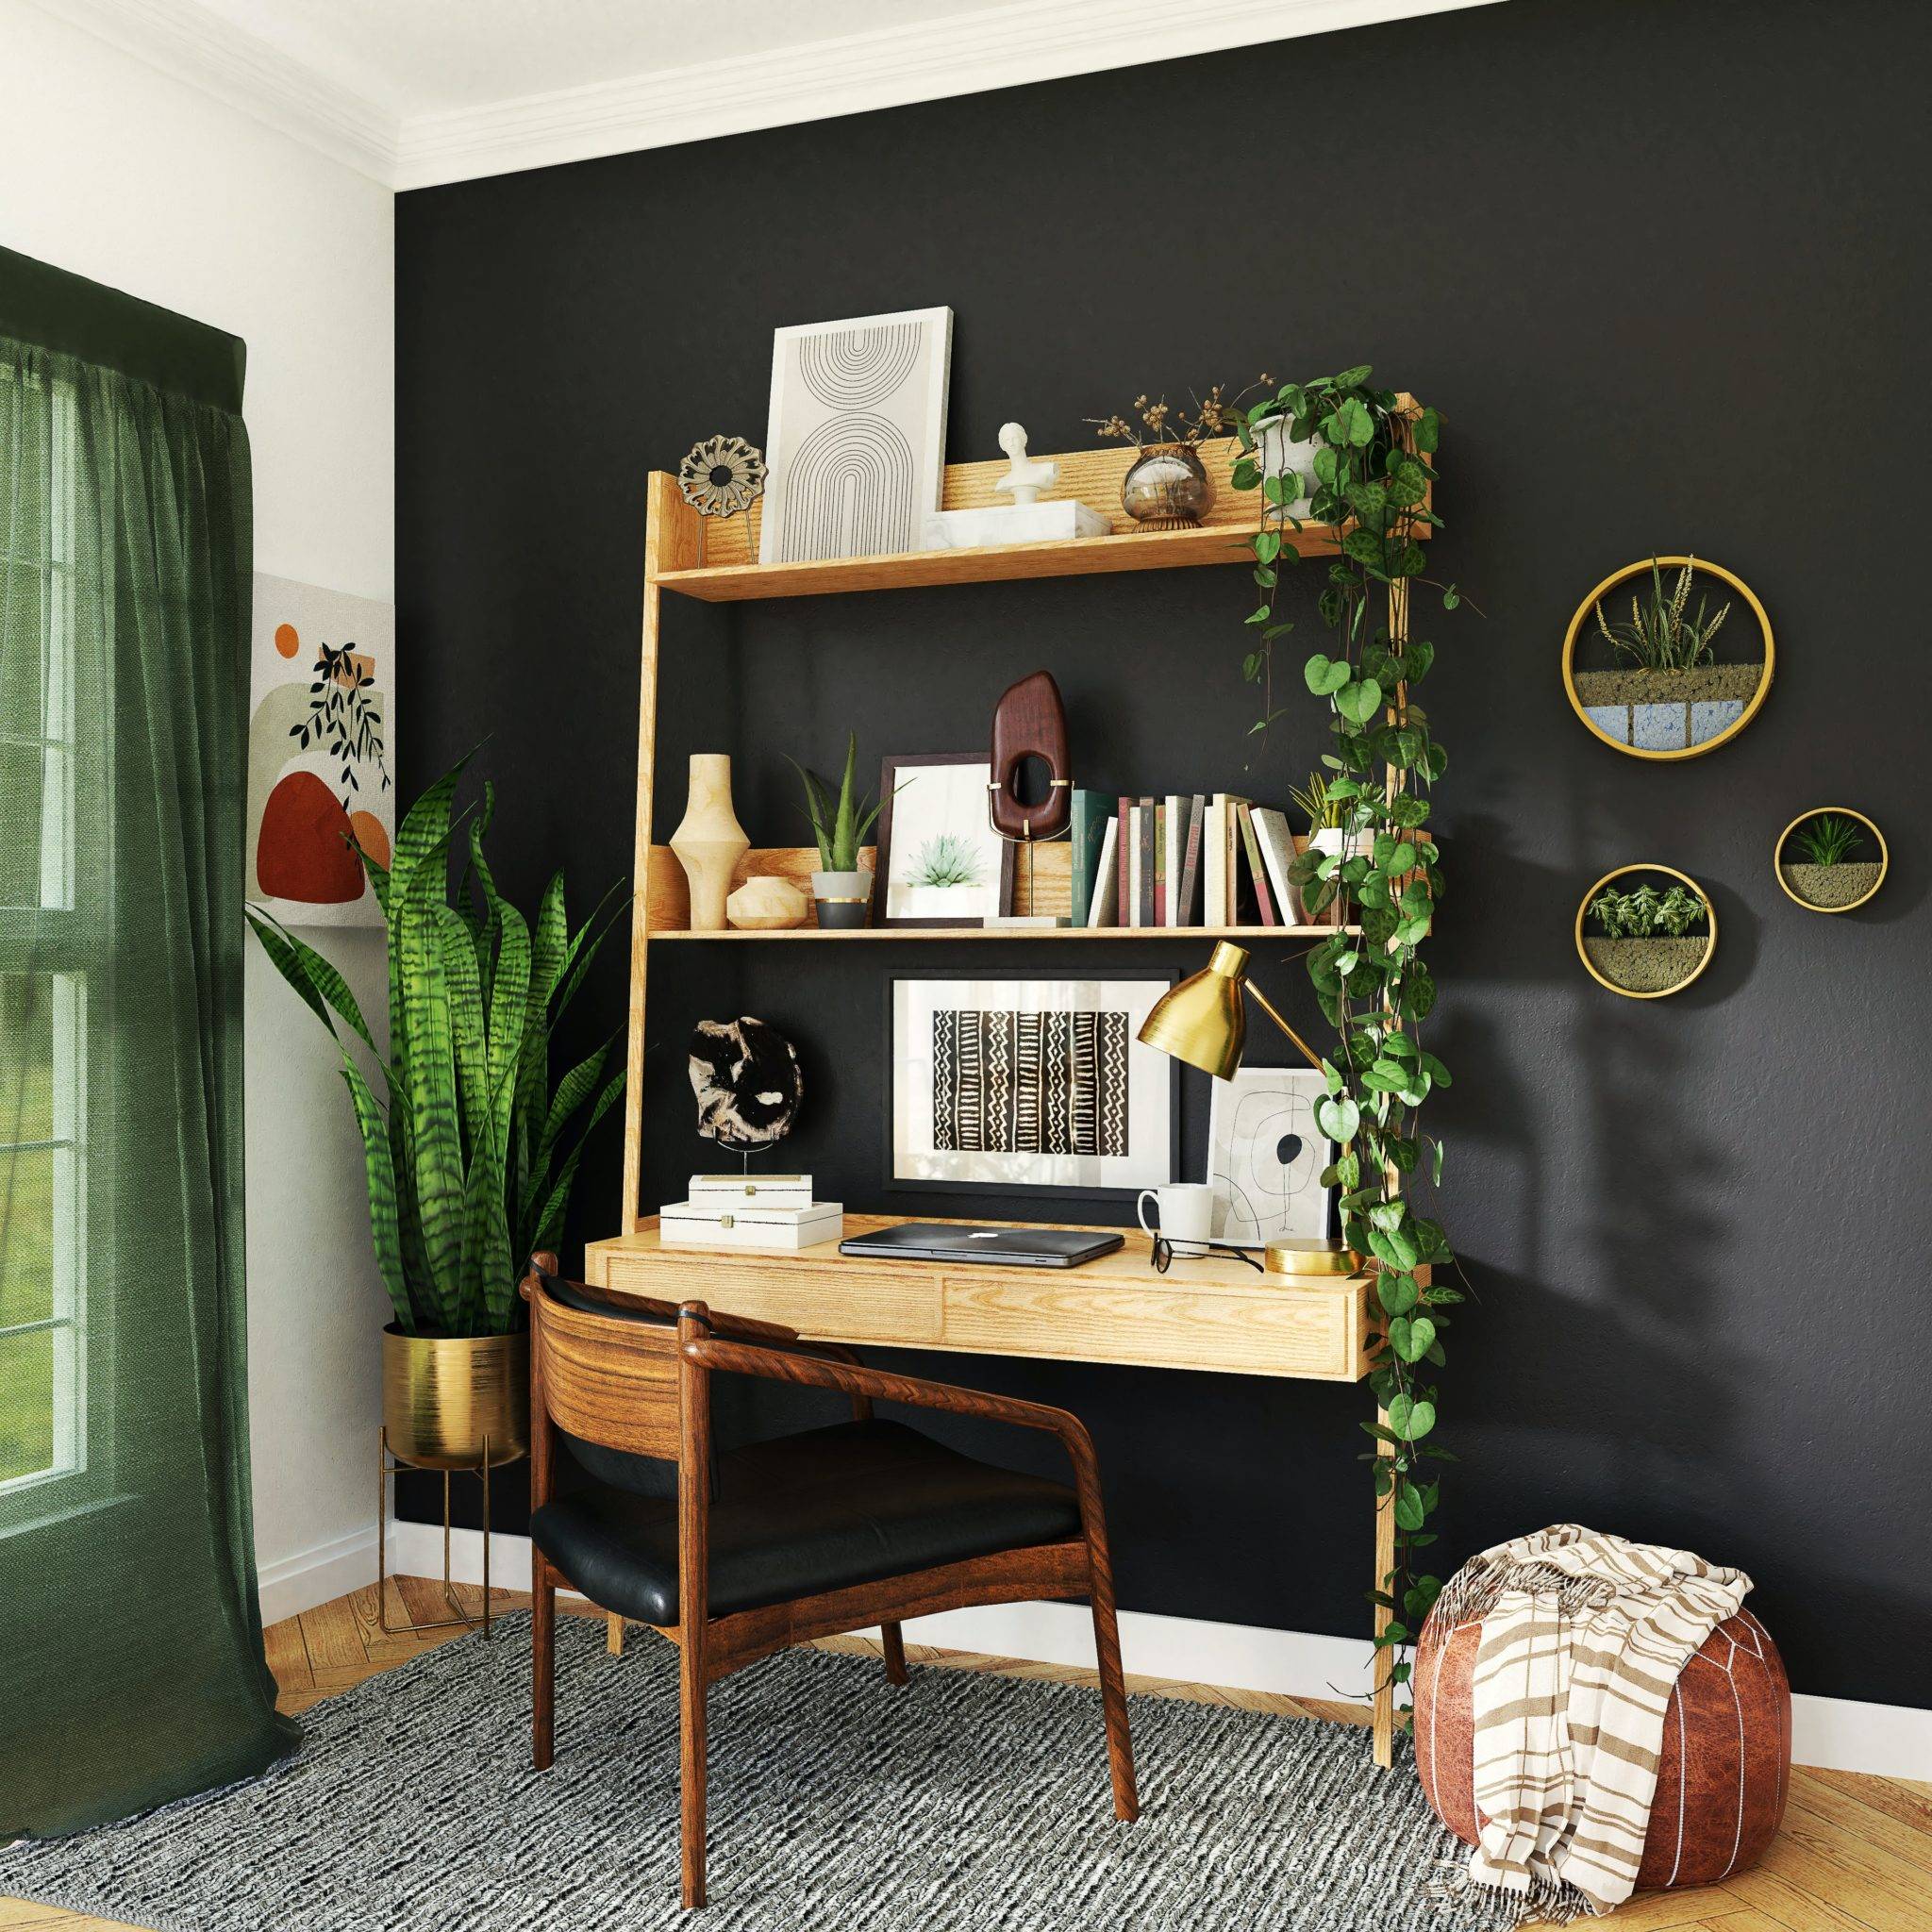 綠色設計;橄欖綠;壁紙;室內芬多精;室內植物;衛浴設計